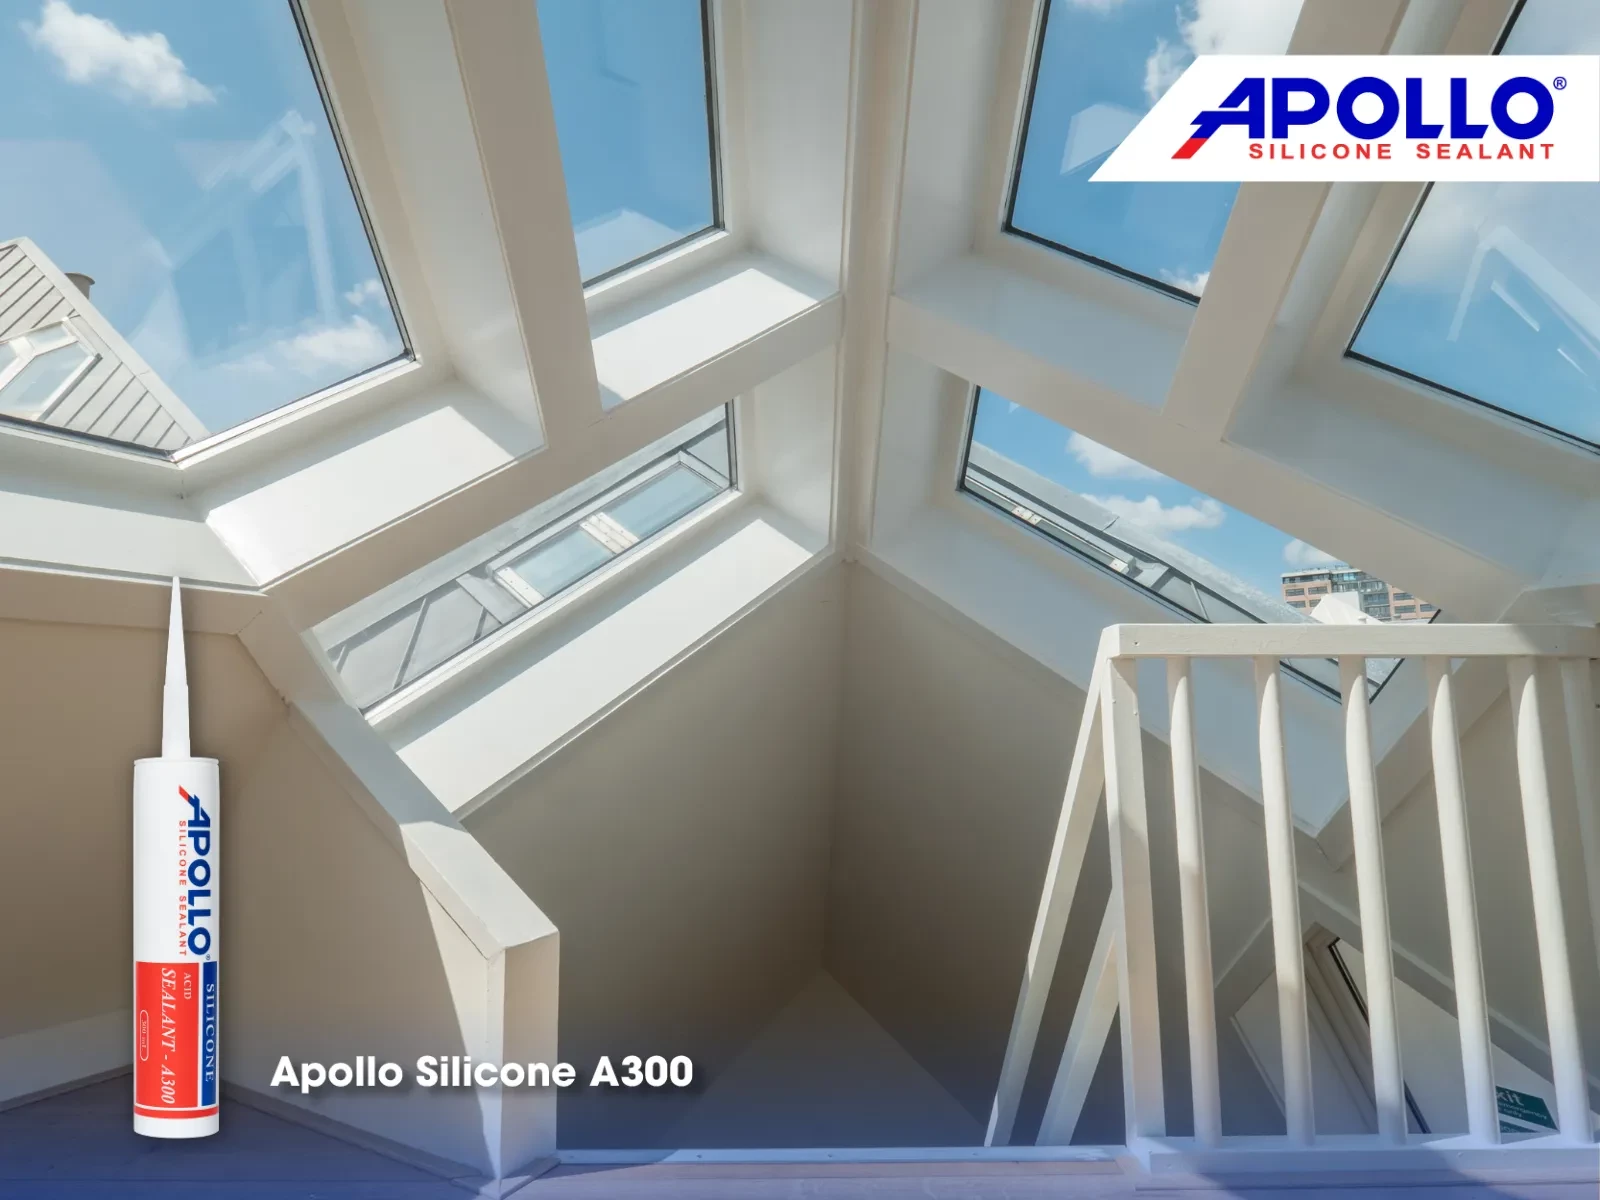 Dòng sản phẩm Apollo Silicone A300 sẽ giúp bạn giải quyết vấn đề kết dính trên bề mặt kính